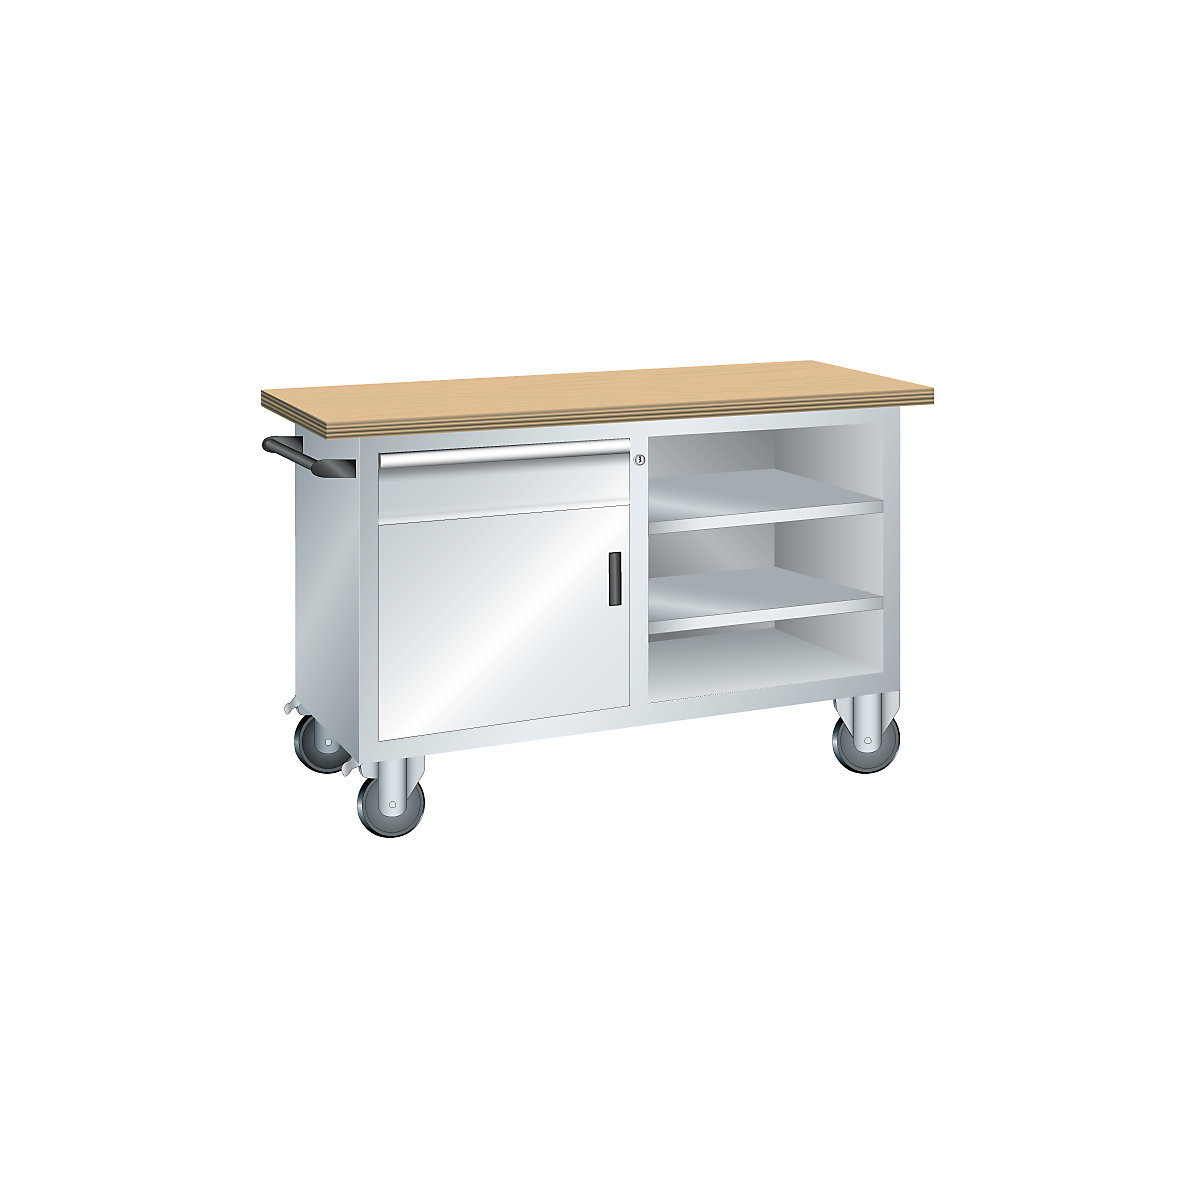 Kompaktowy stół warsztatowy, mobilny – LISTA, 1 szuflada, 1 drzwi, 3 półki, korpus jasnoszary, front jasnoszary-2